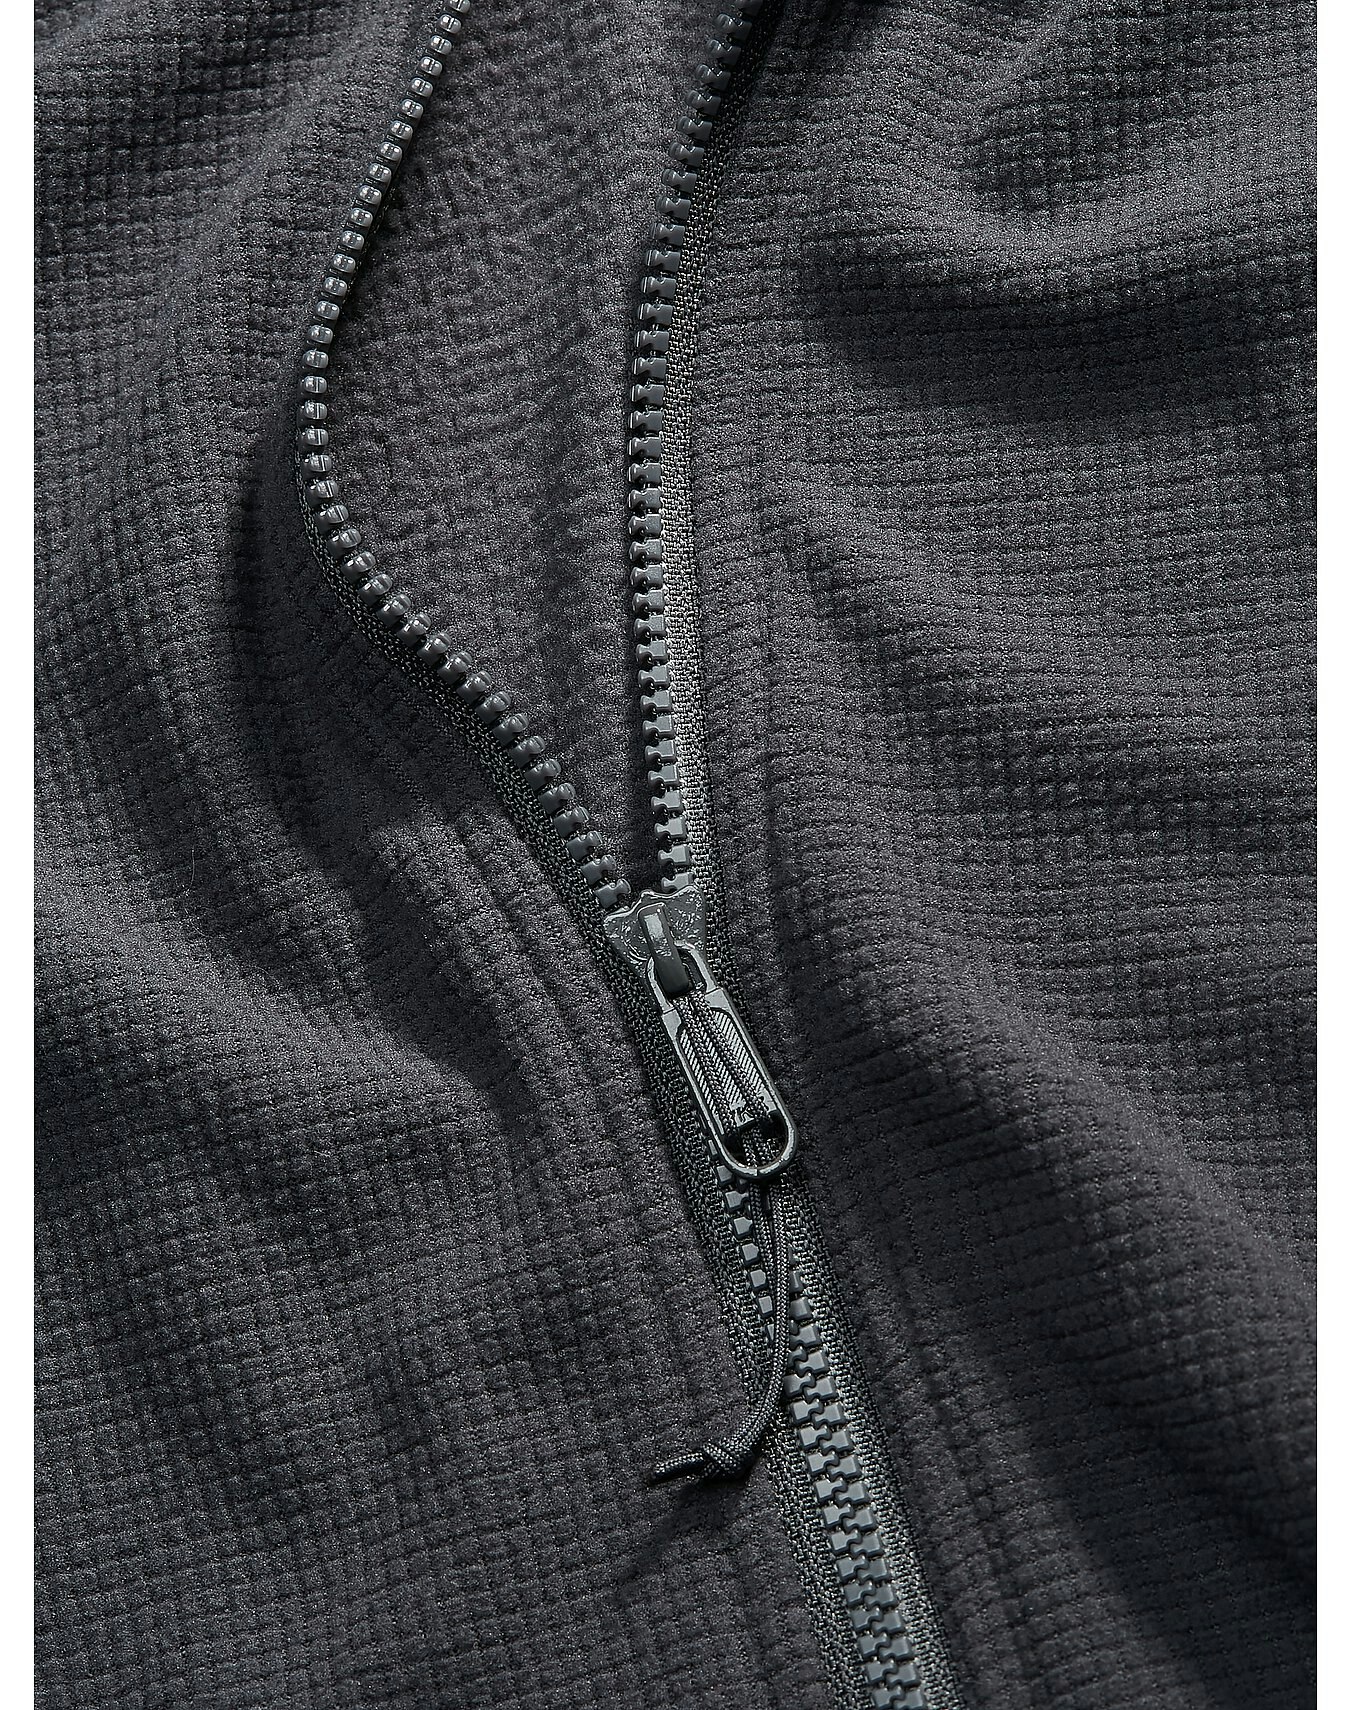 Delta-LT-Jacket-Glitch-Fabric.jpg?auto=format&w=1350